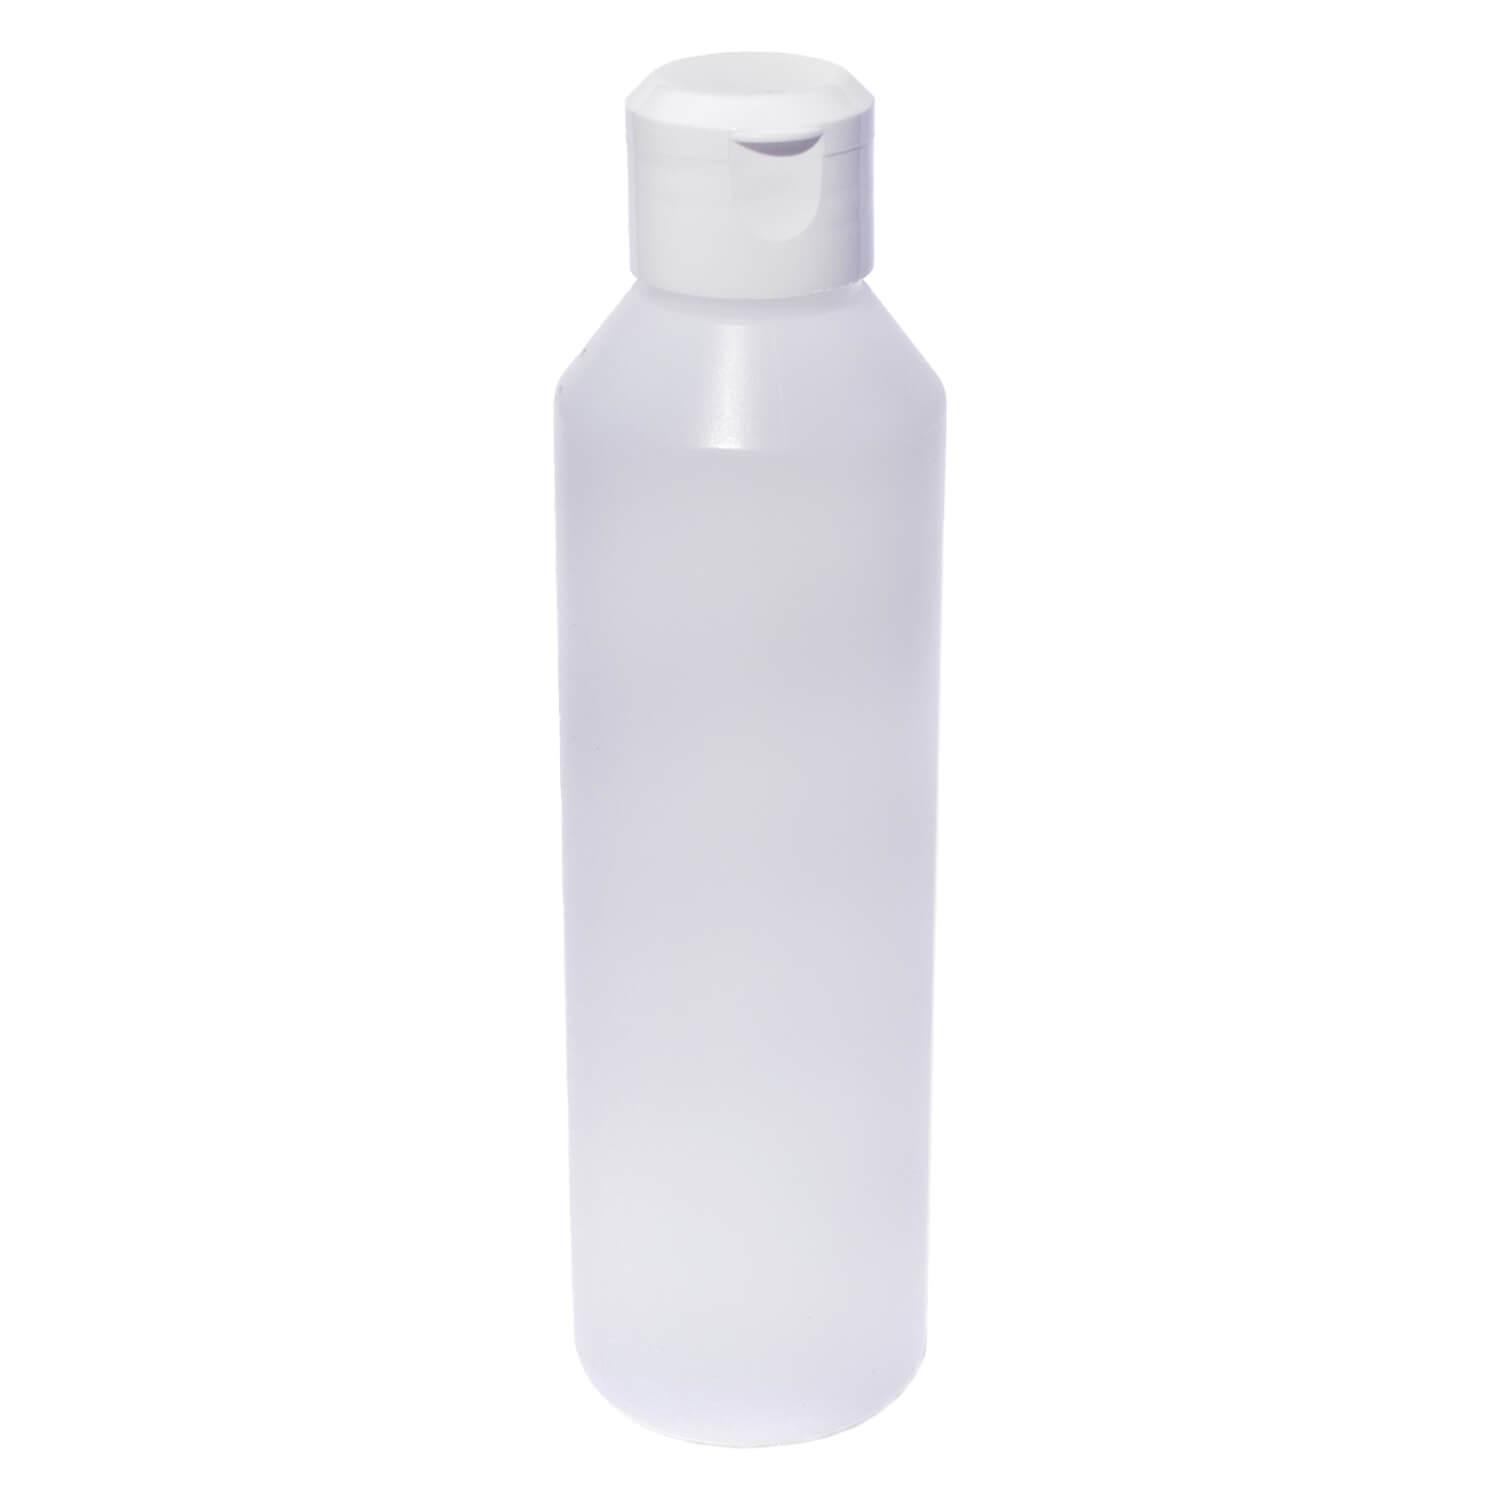 jolu - Biokunststoff Flasche